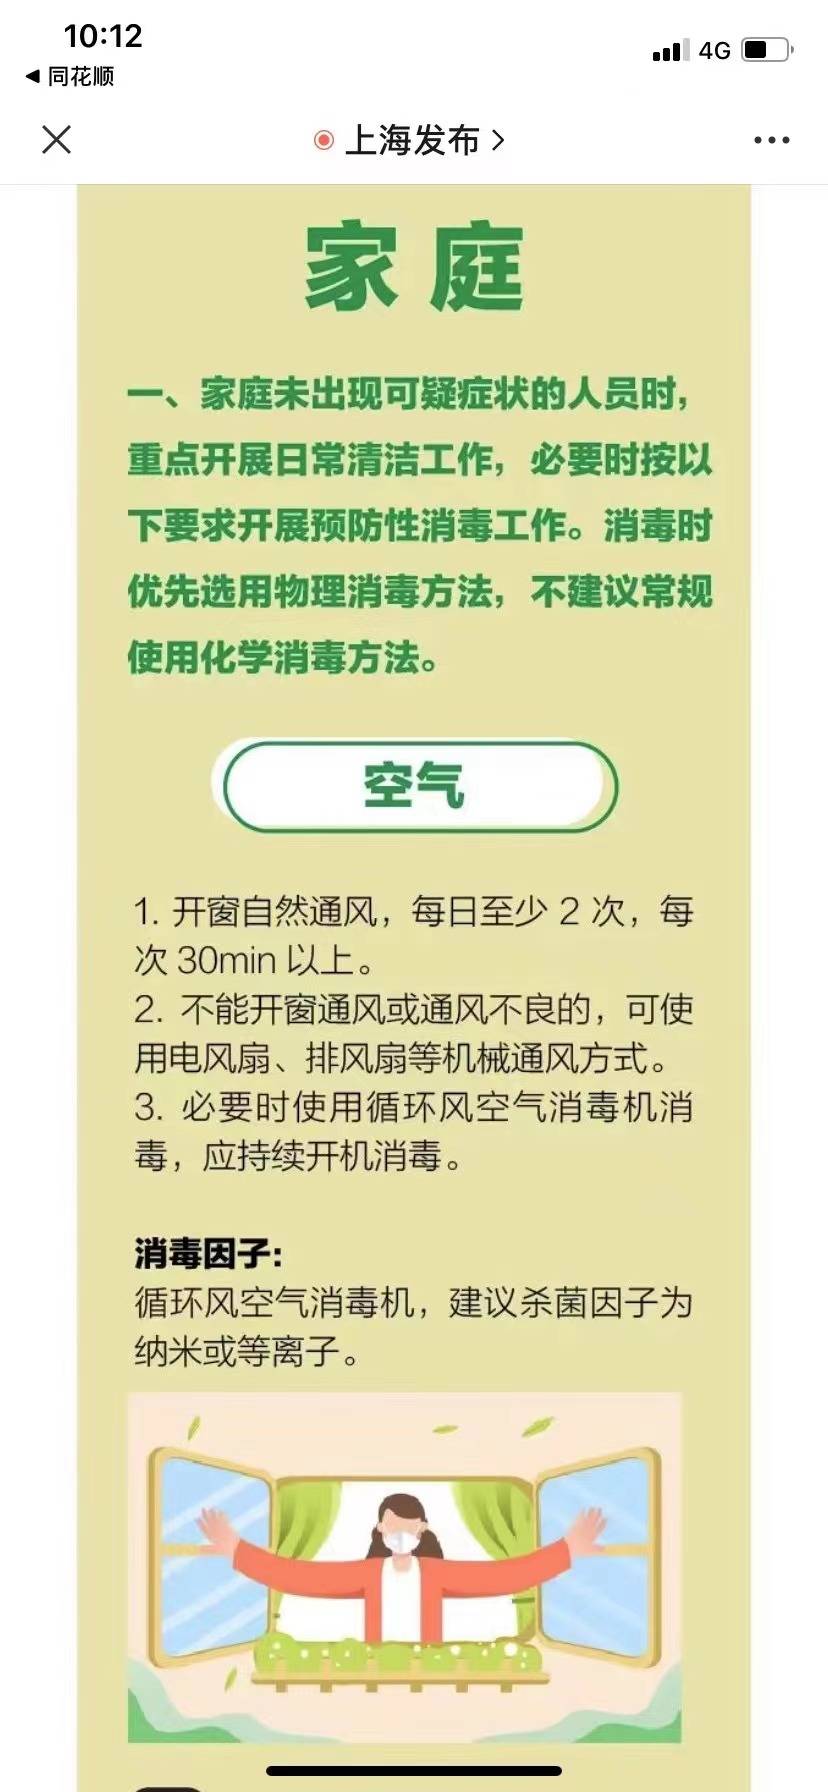 上海发布建议家庭使用纳米或等离子杀菌因子空气消毒机进行家庭环境